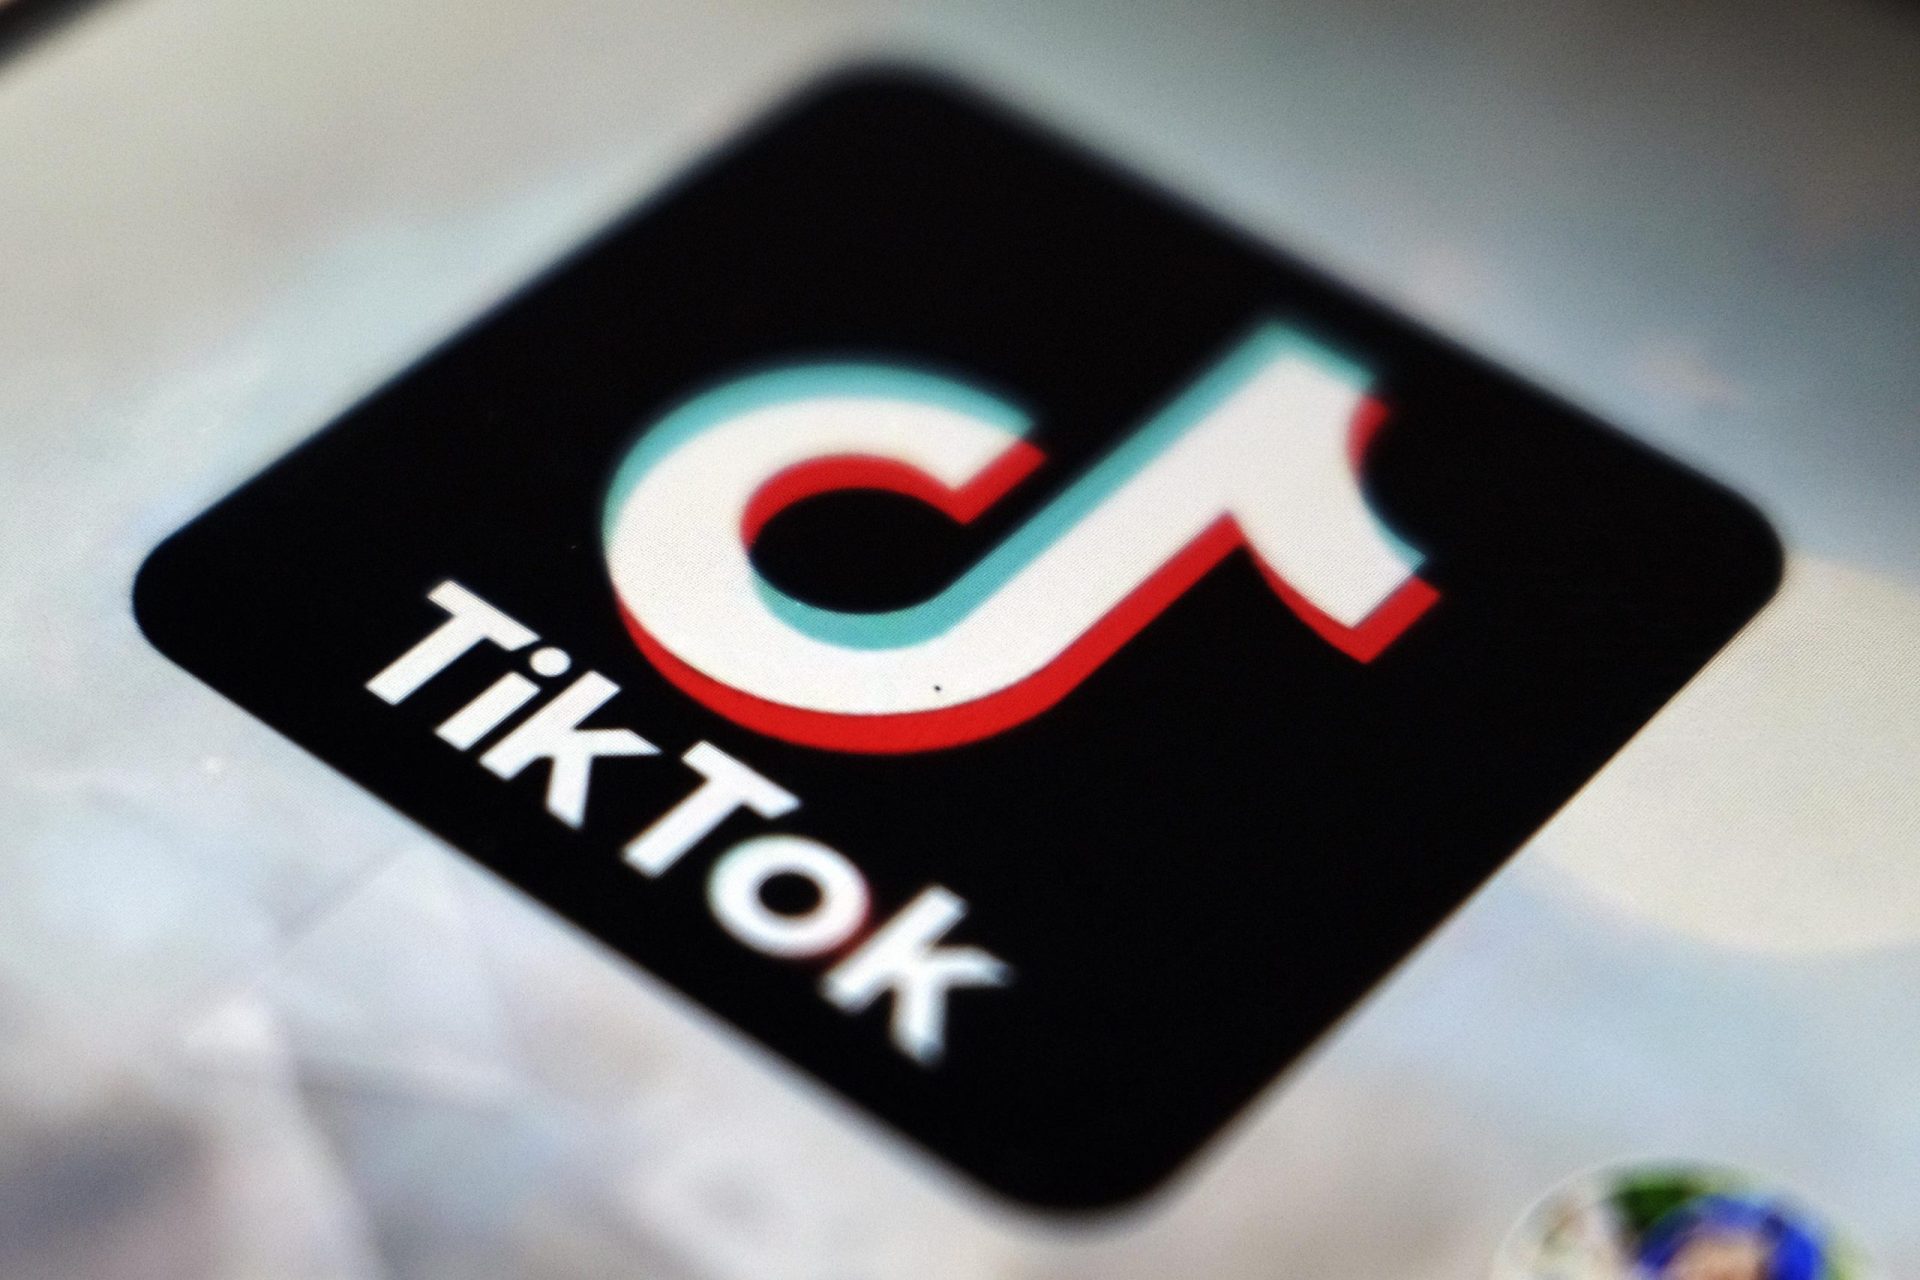 Resultados de búsqueda en TikTok plagados de desinformación: Informe